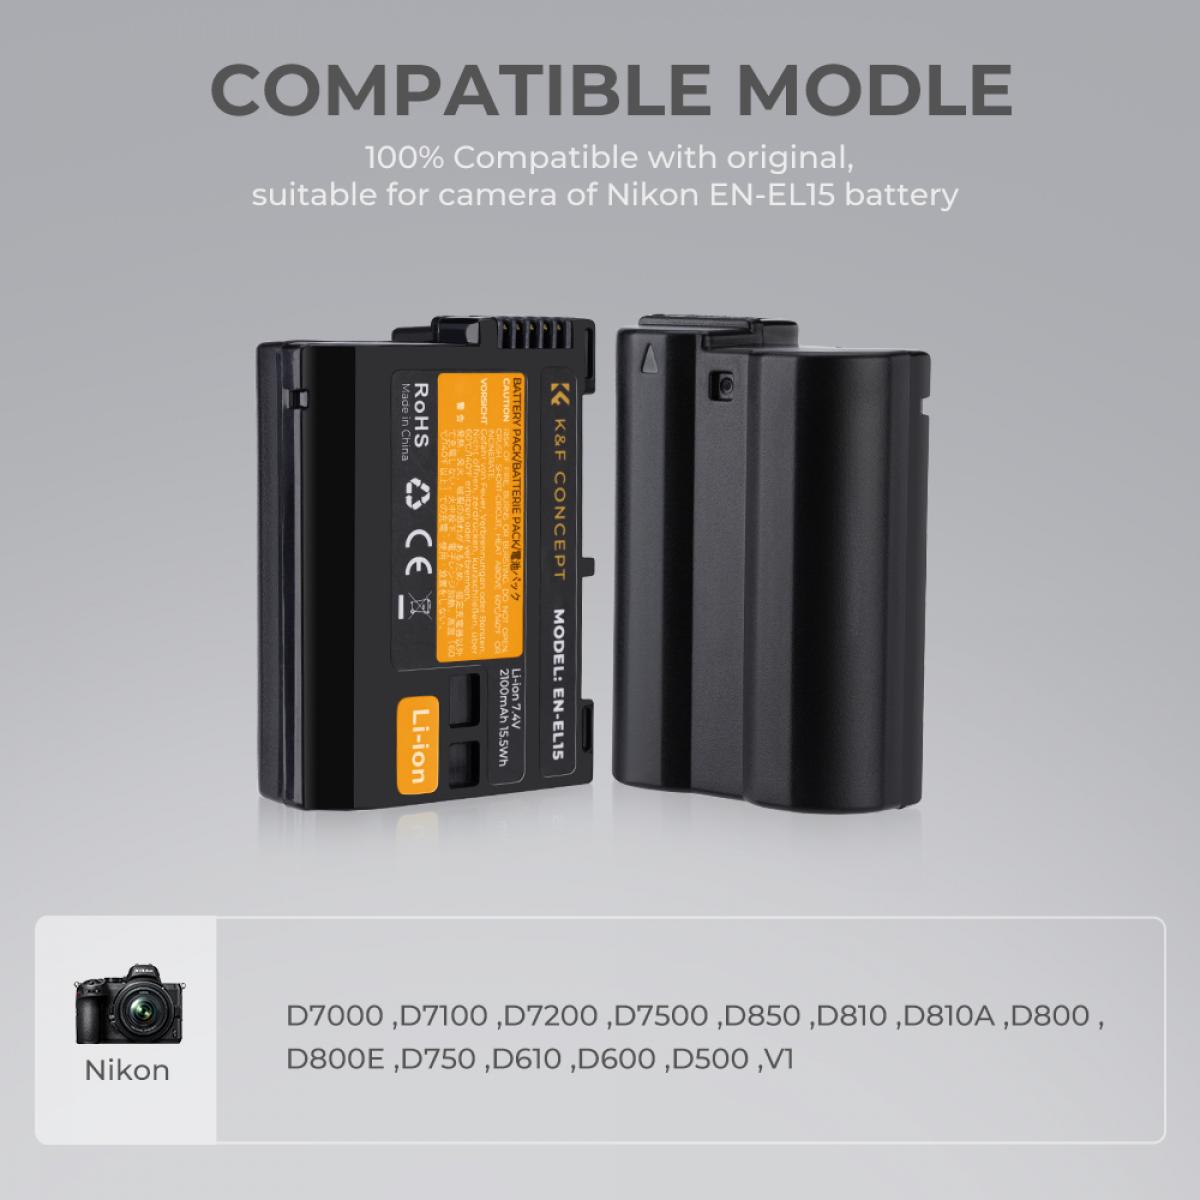 K&F Concept nikon EN-EL15 rechargeable battery 2-piece dual slot battery charger kit